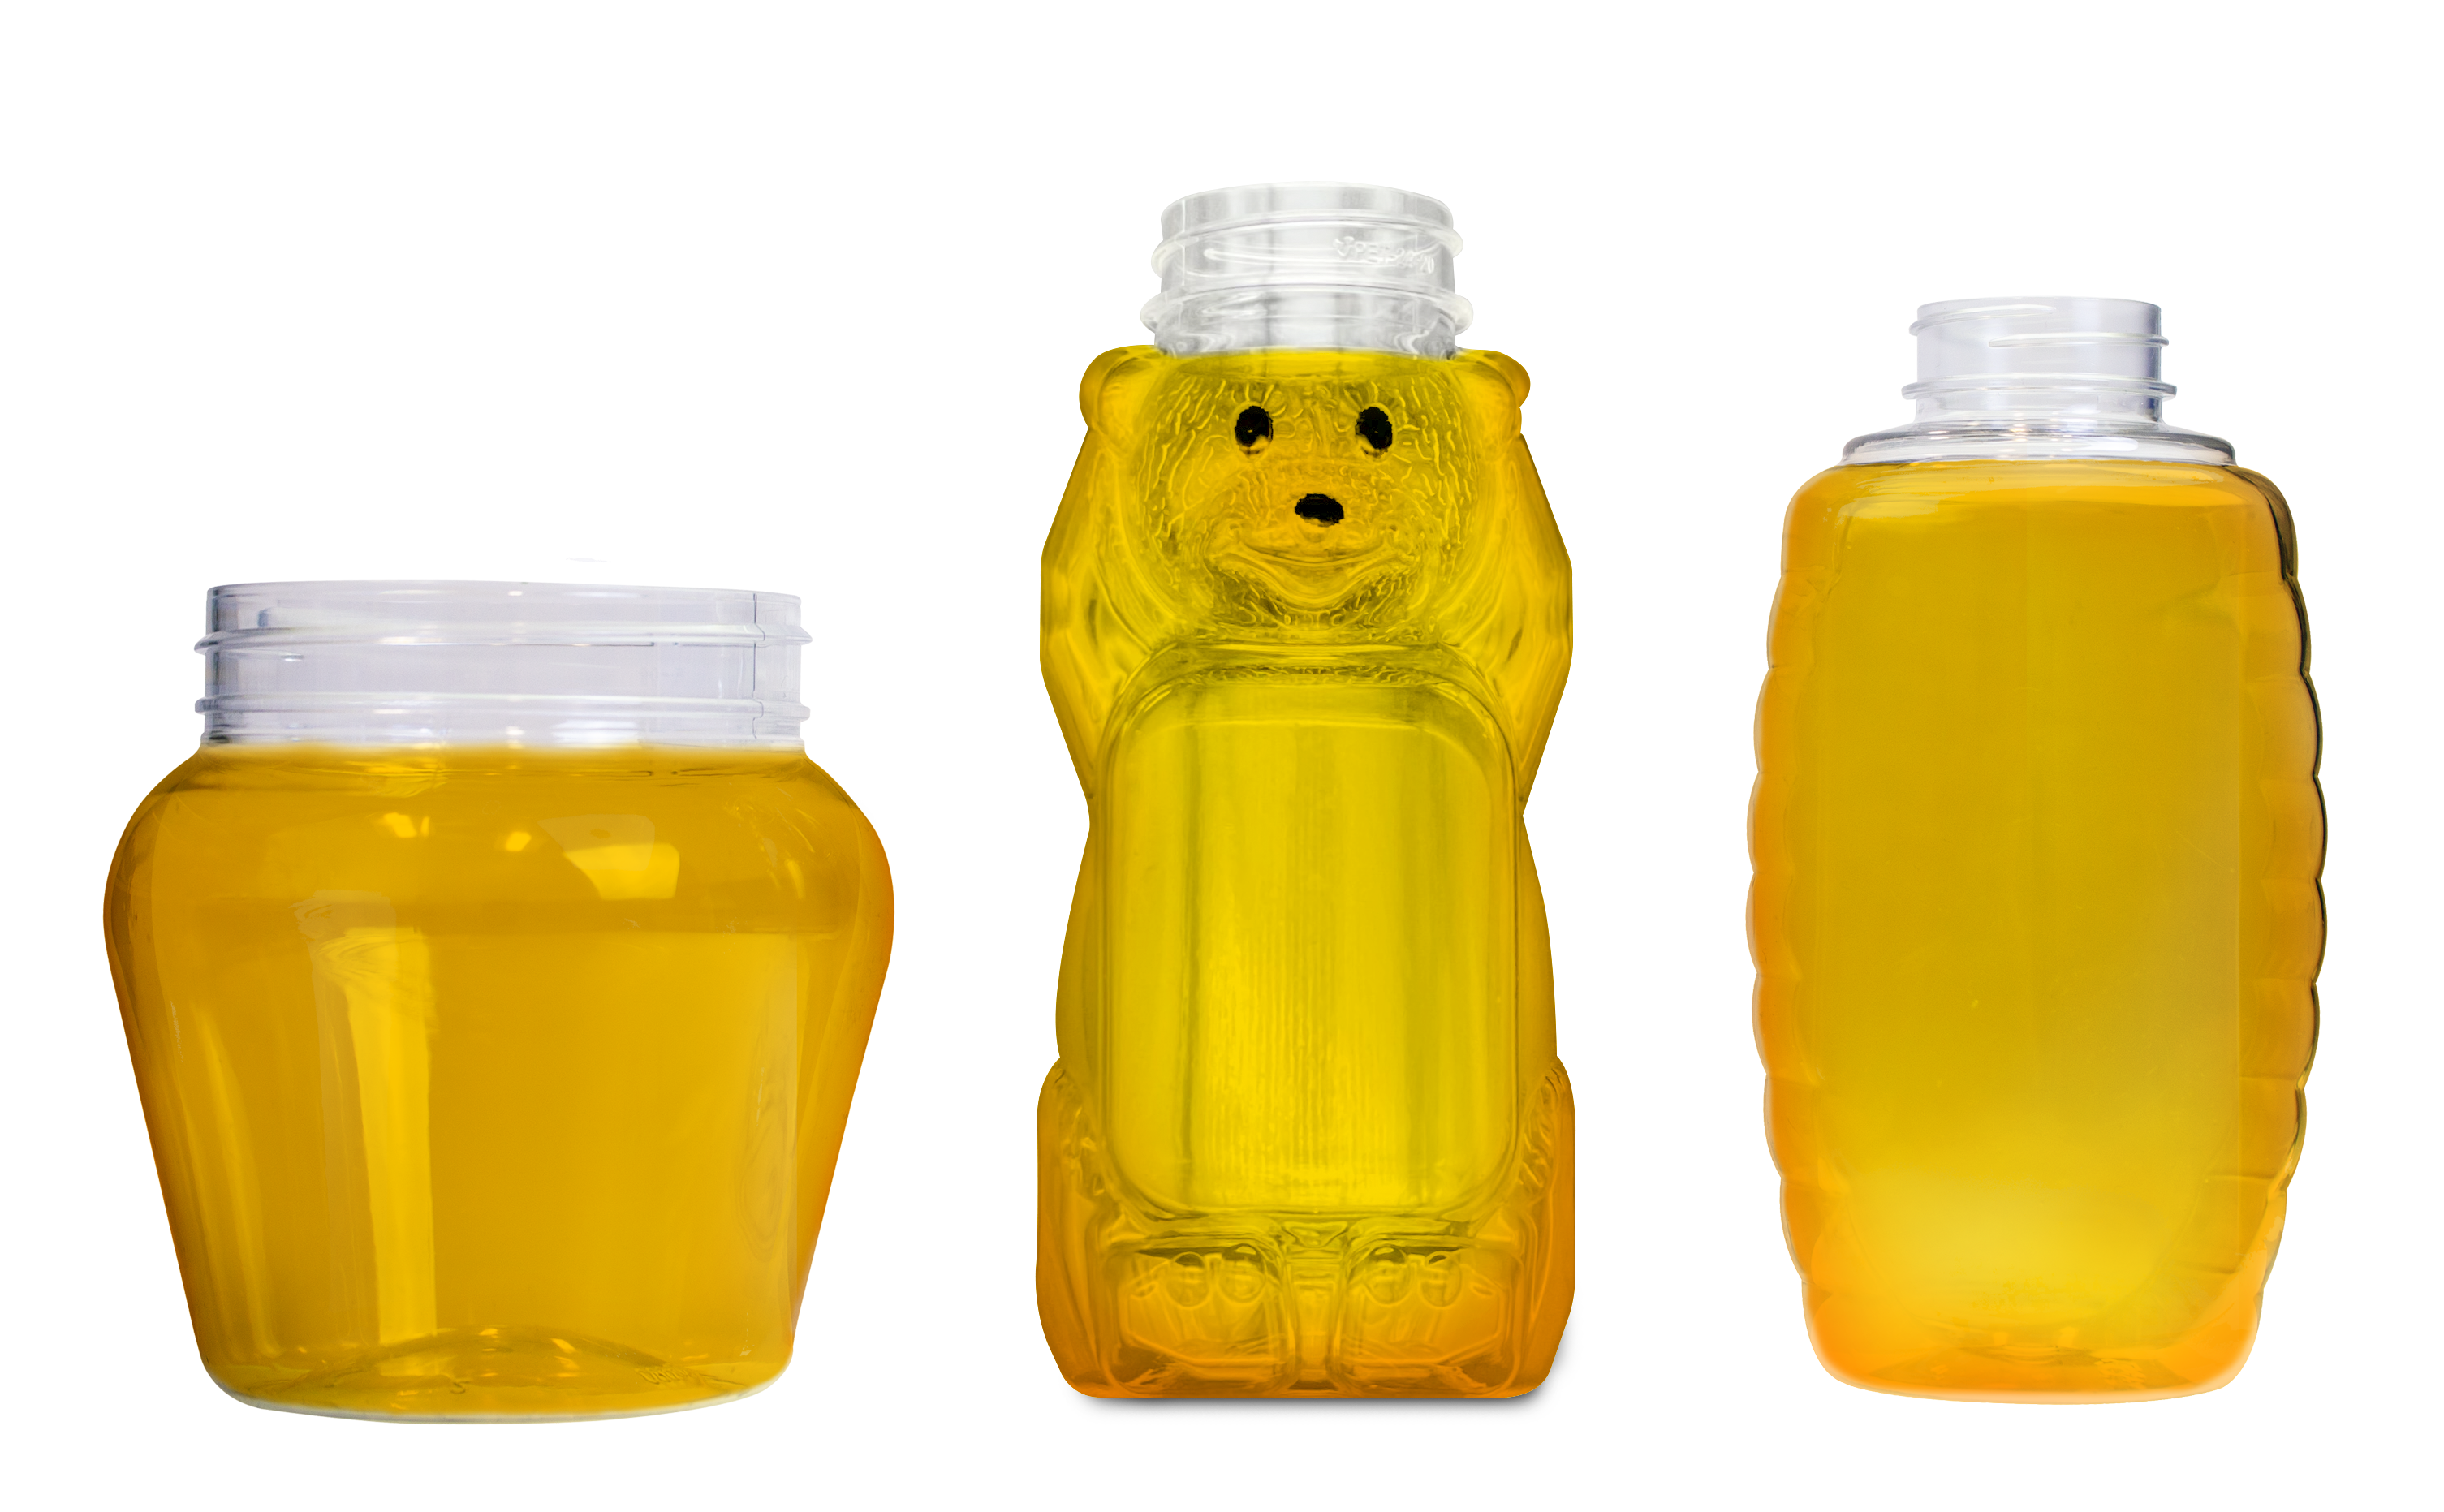 honey bottles